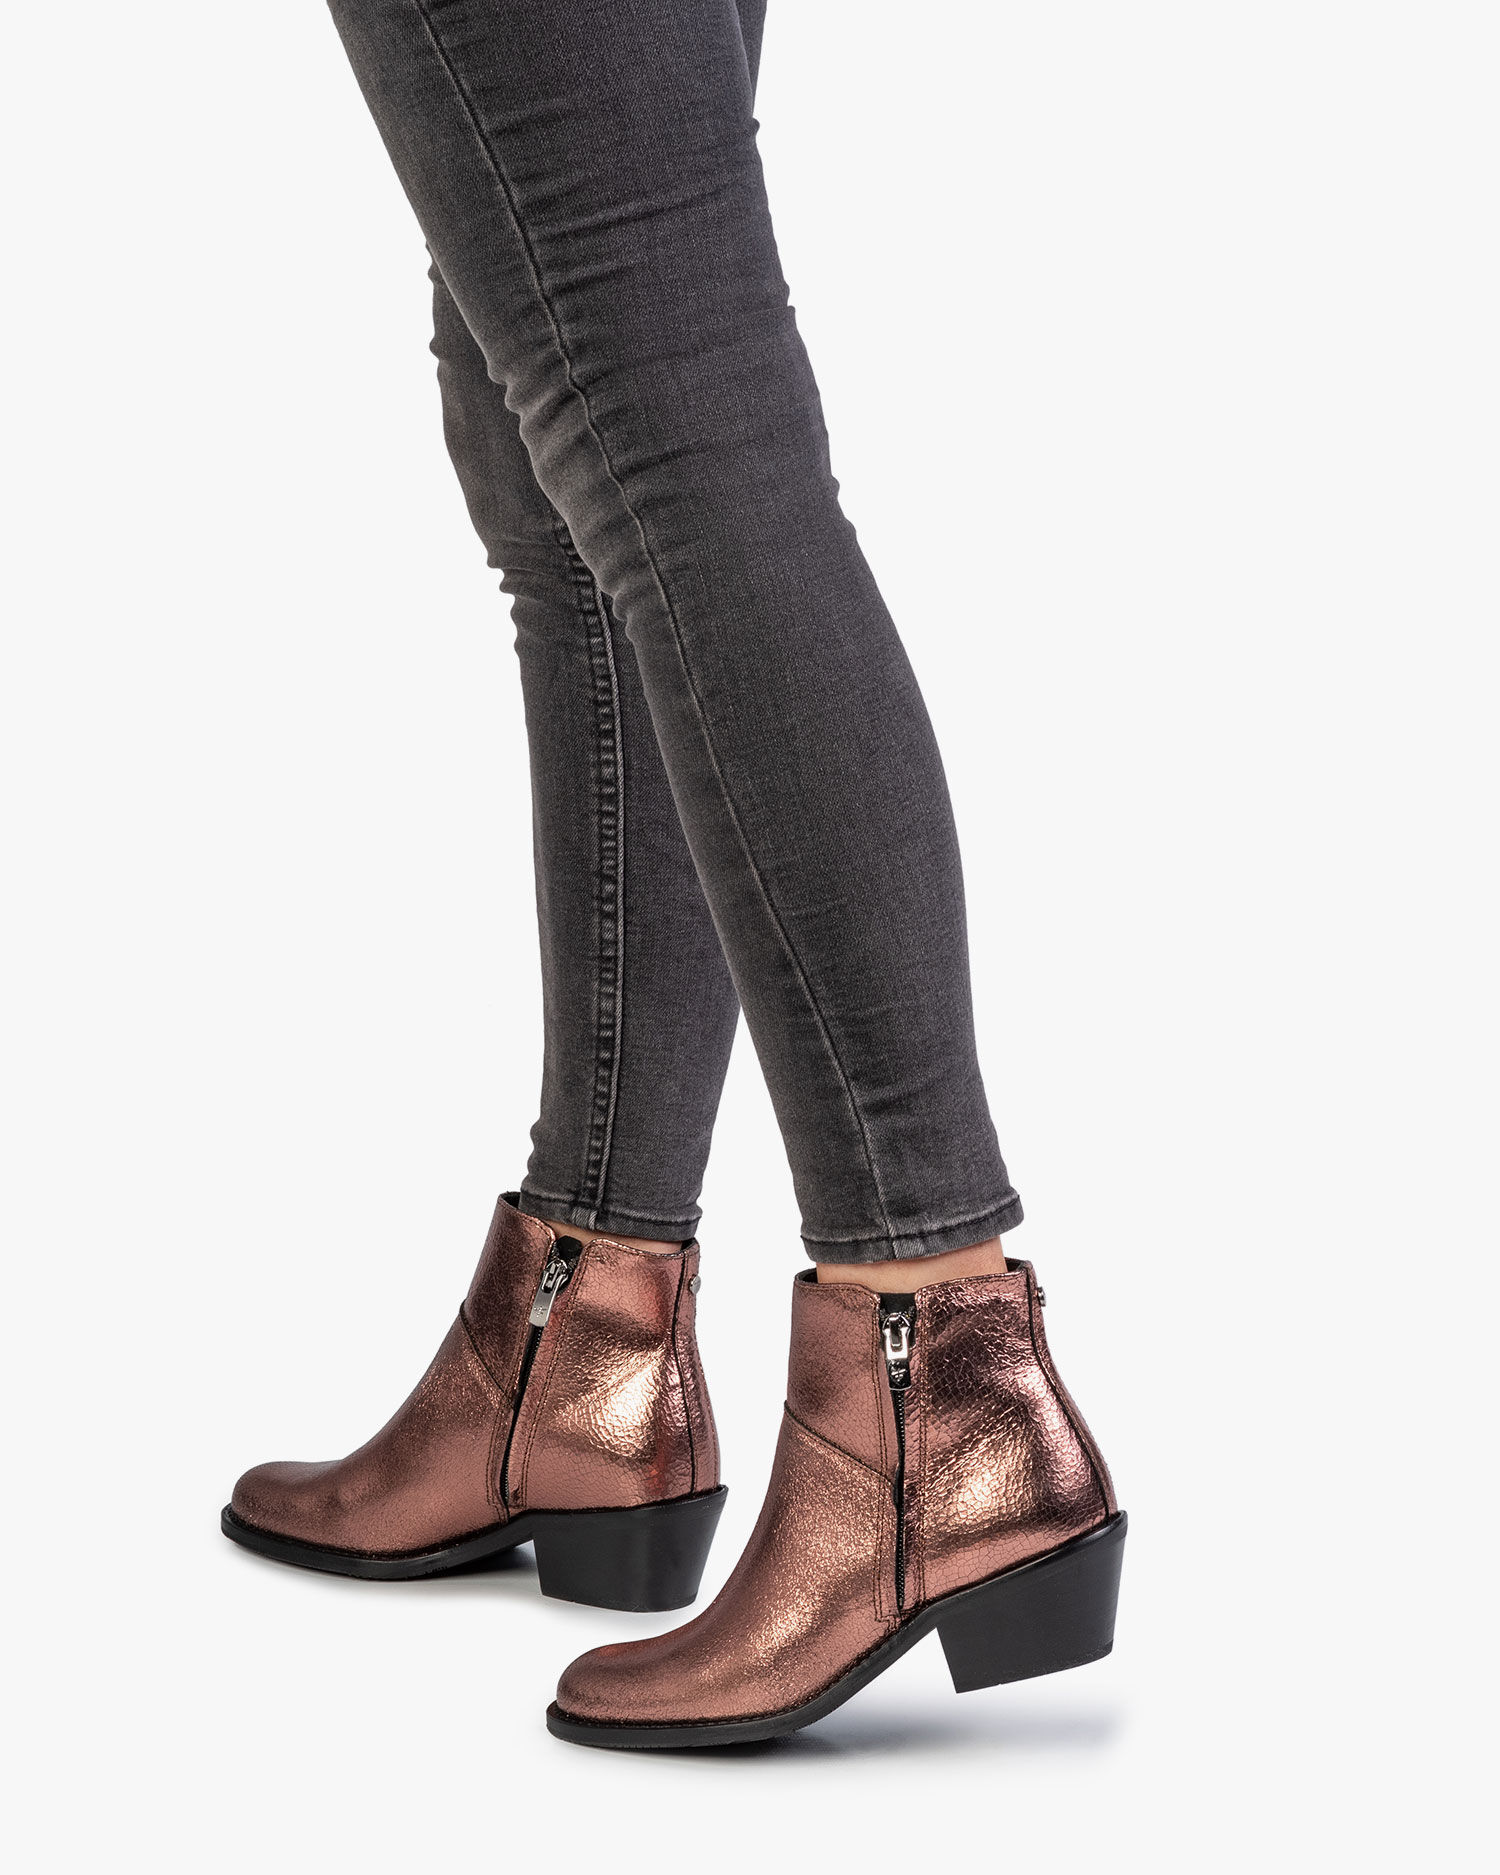 Copper-coloured leather ankle boot 85642/01 | Floris van Bommel Women®